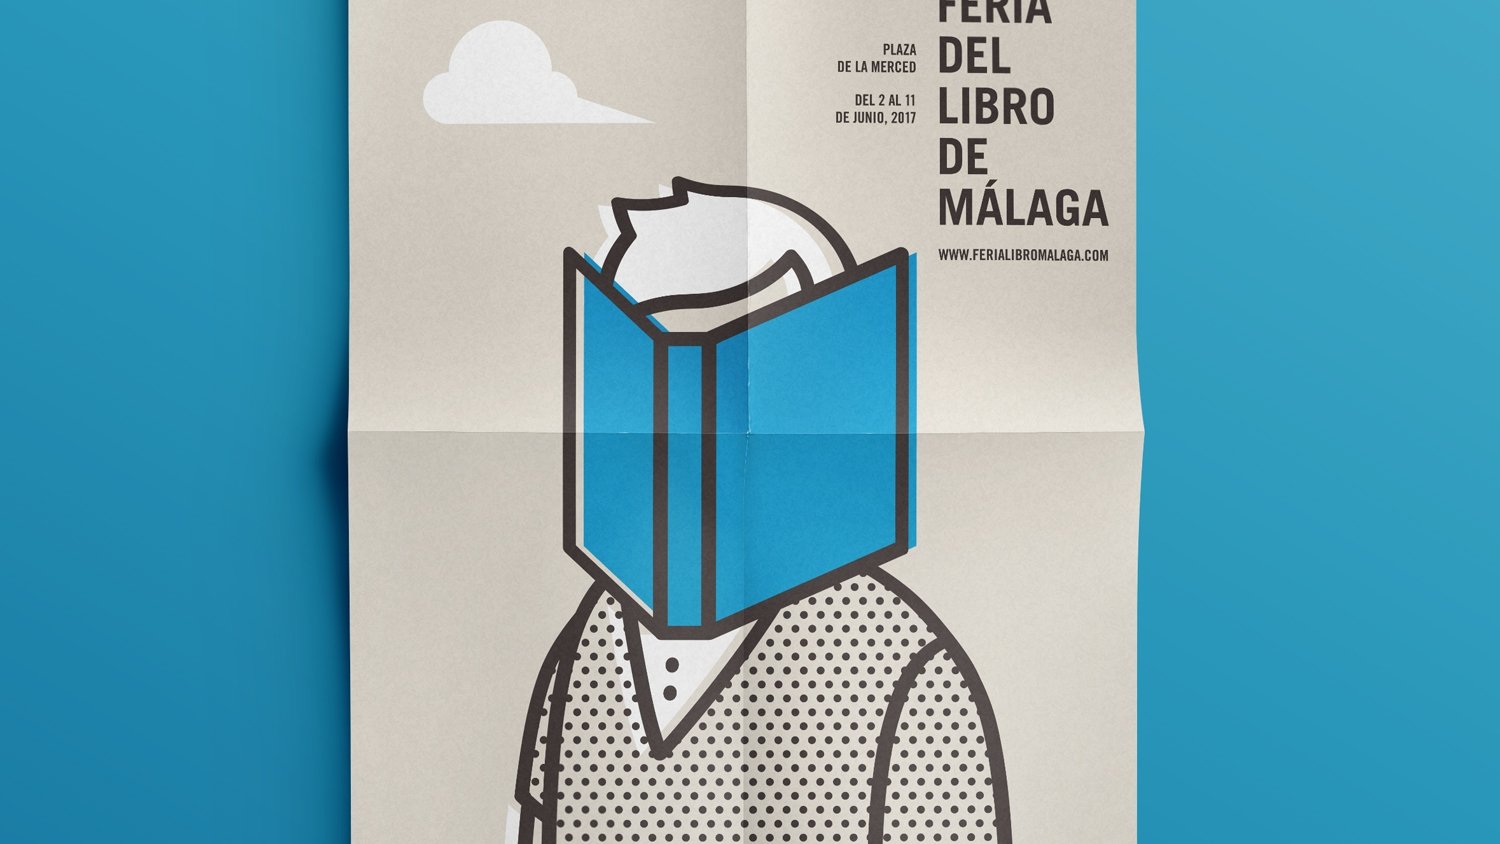 La 47 Feria del Libro de Málaga se celebrará del 2 al 11 de junio en la plaza de la Merced